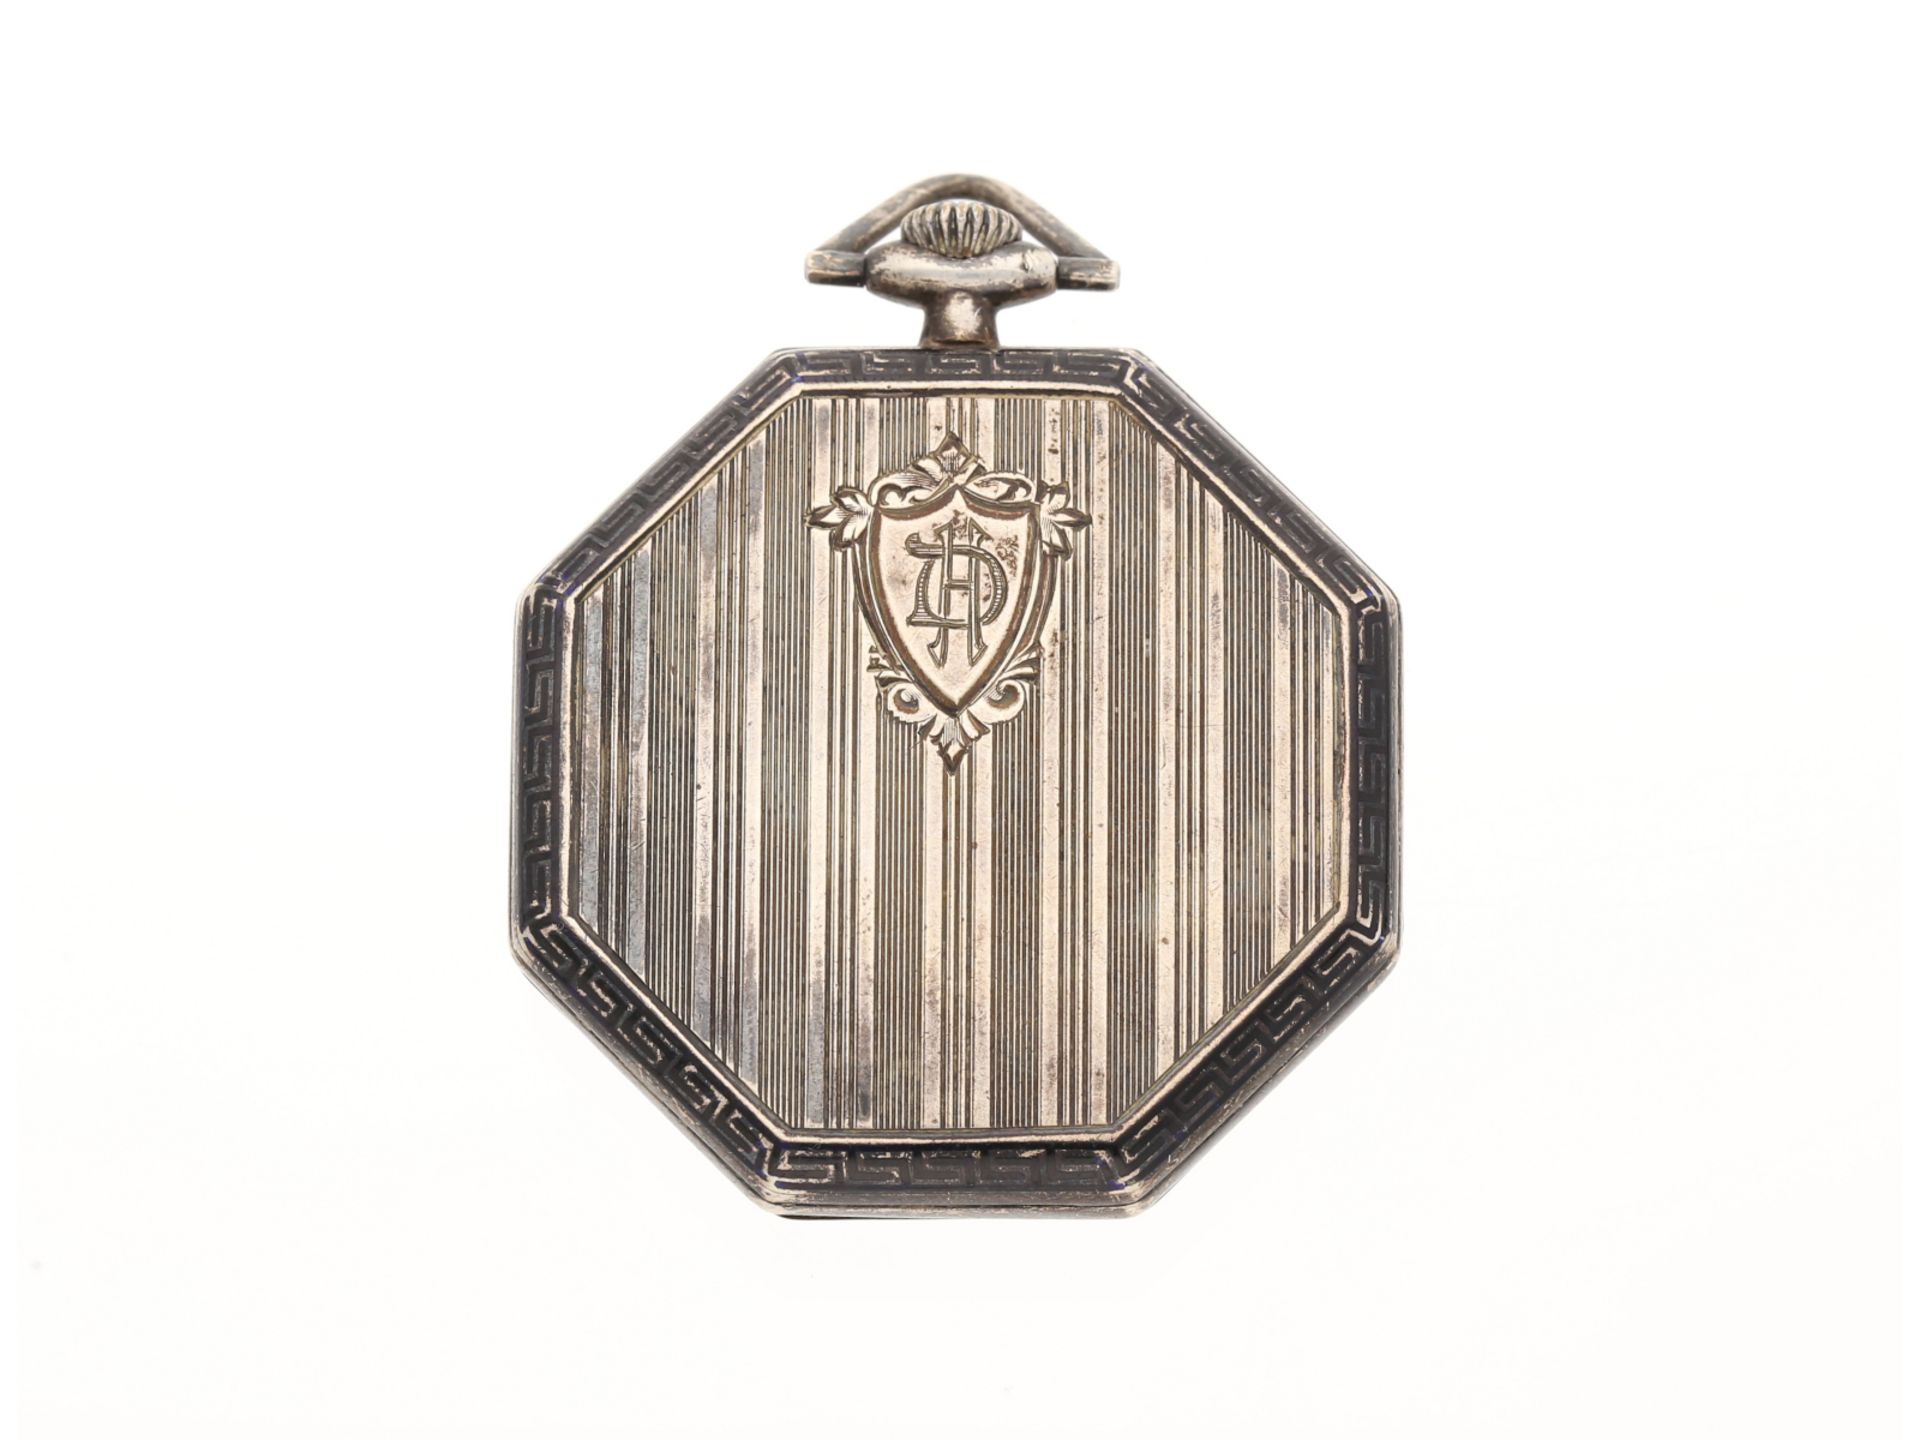 Taschenuhr: schöne Art Déco Frackuhr, Silber mit Emaille, Havila Watch Geneve, ca. 1920/30 - Bild 2 aus 4